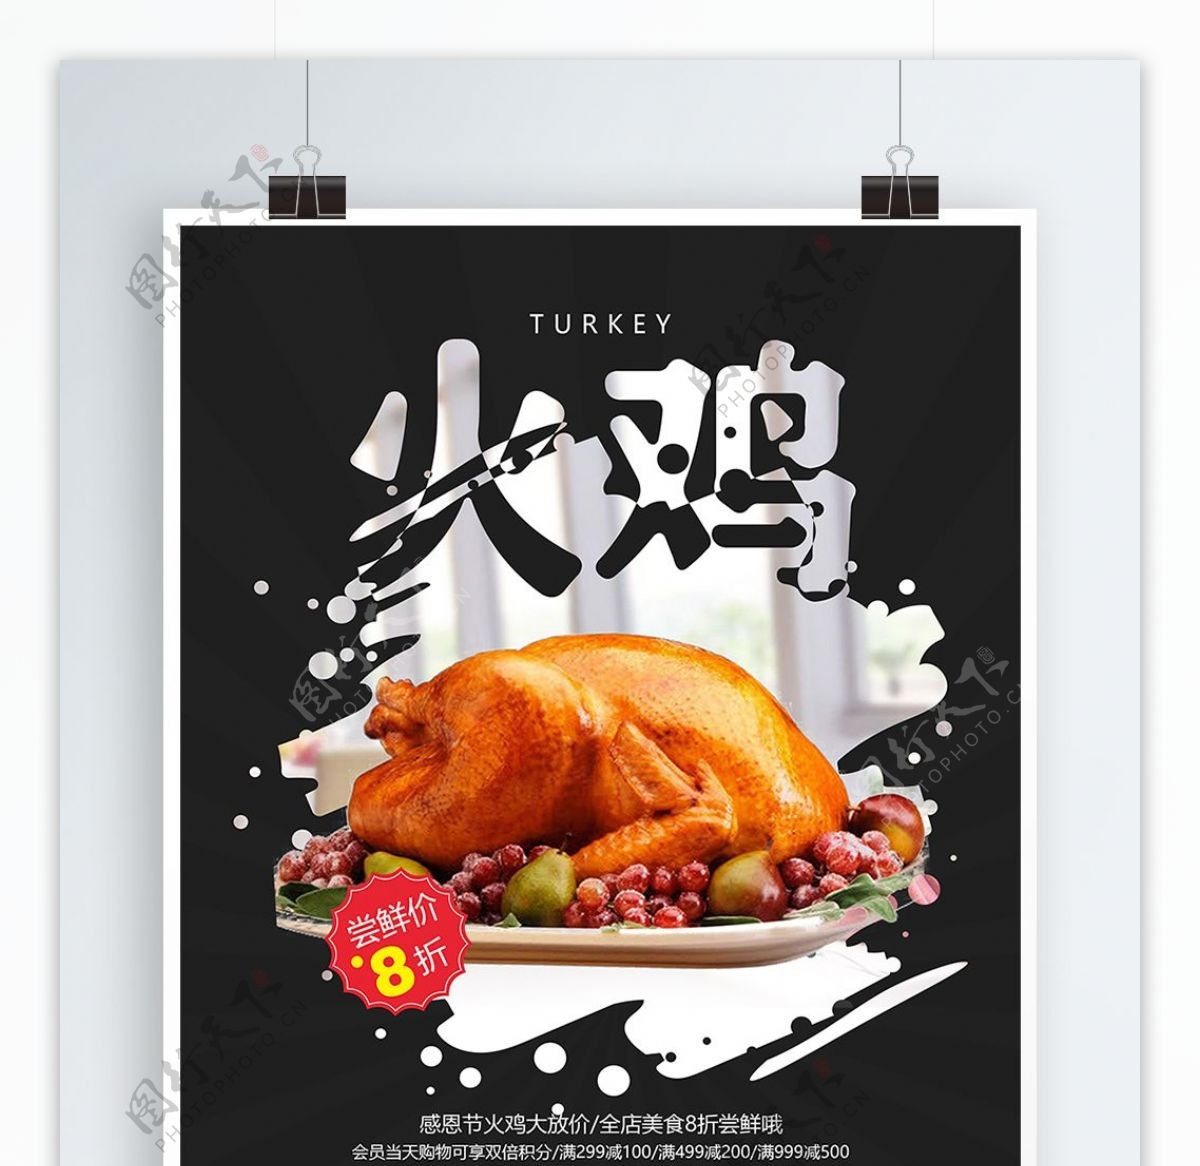 黑色大气感恩节火鸡美食促销宣传海报设计